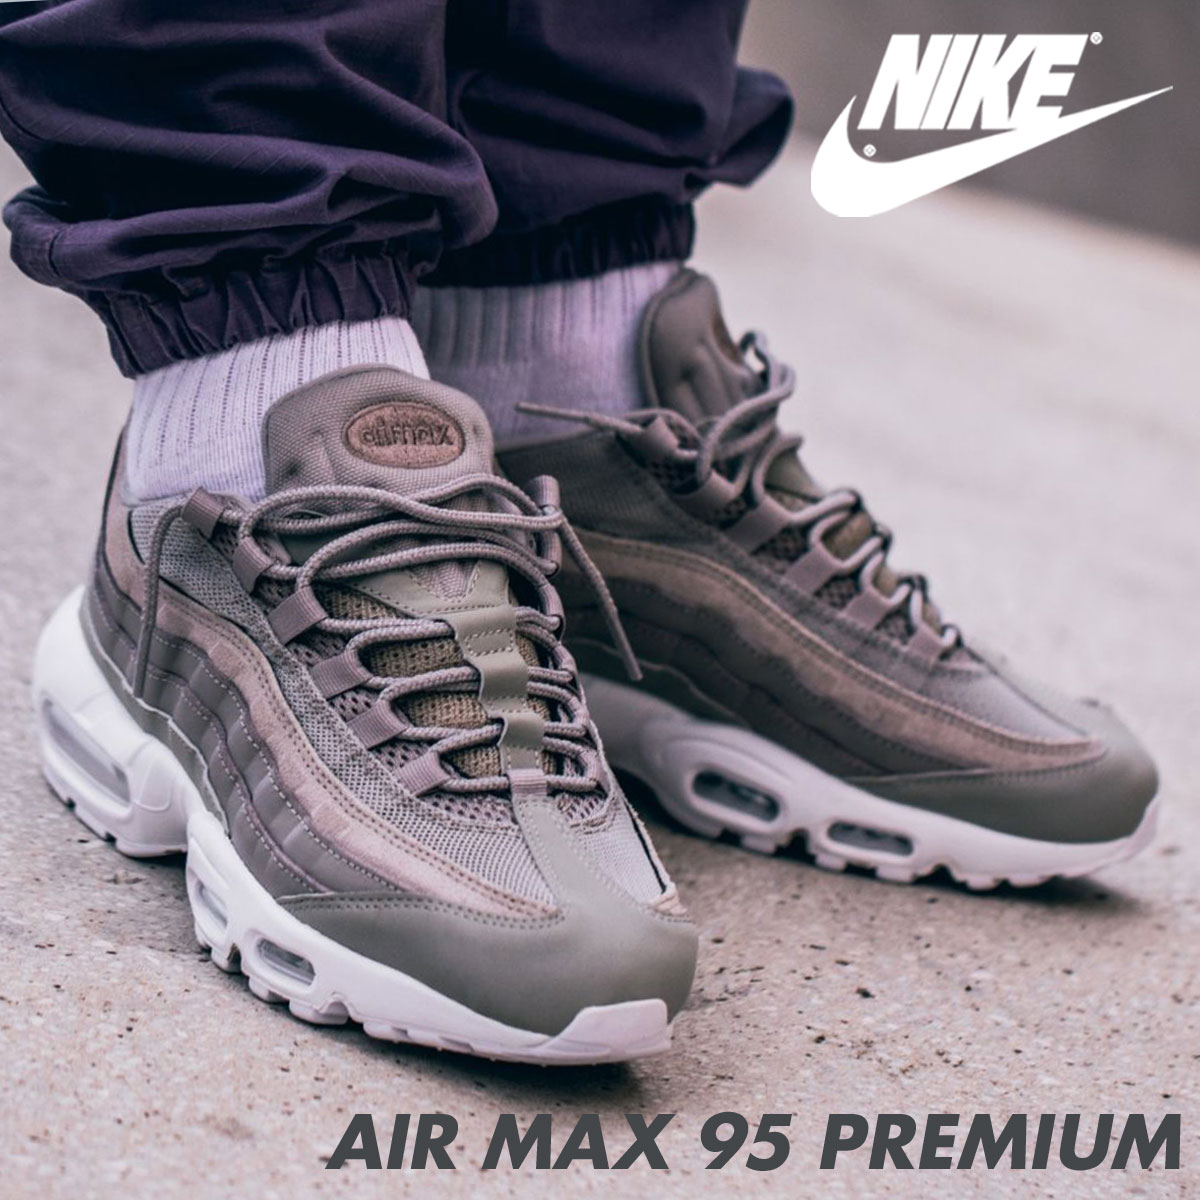 nike air max 95 premium sneaker